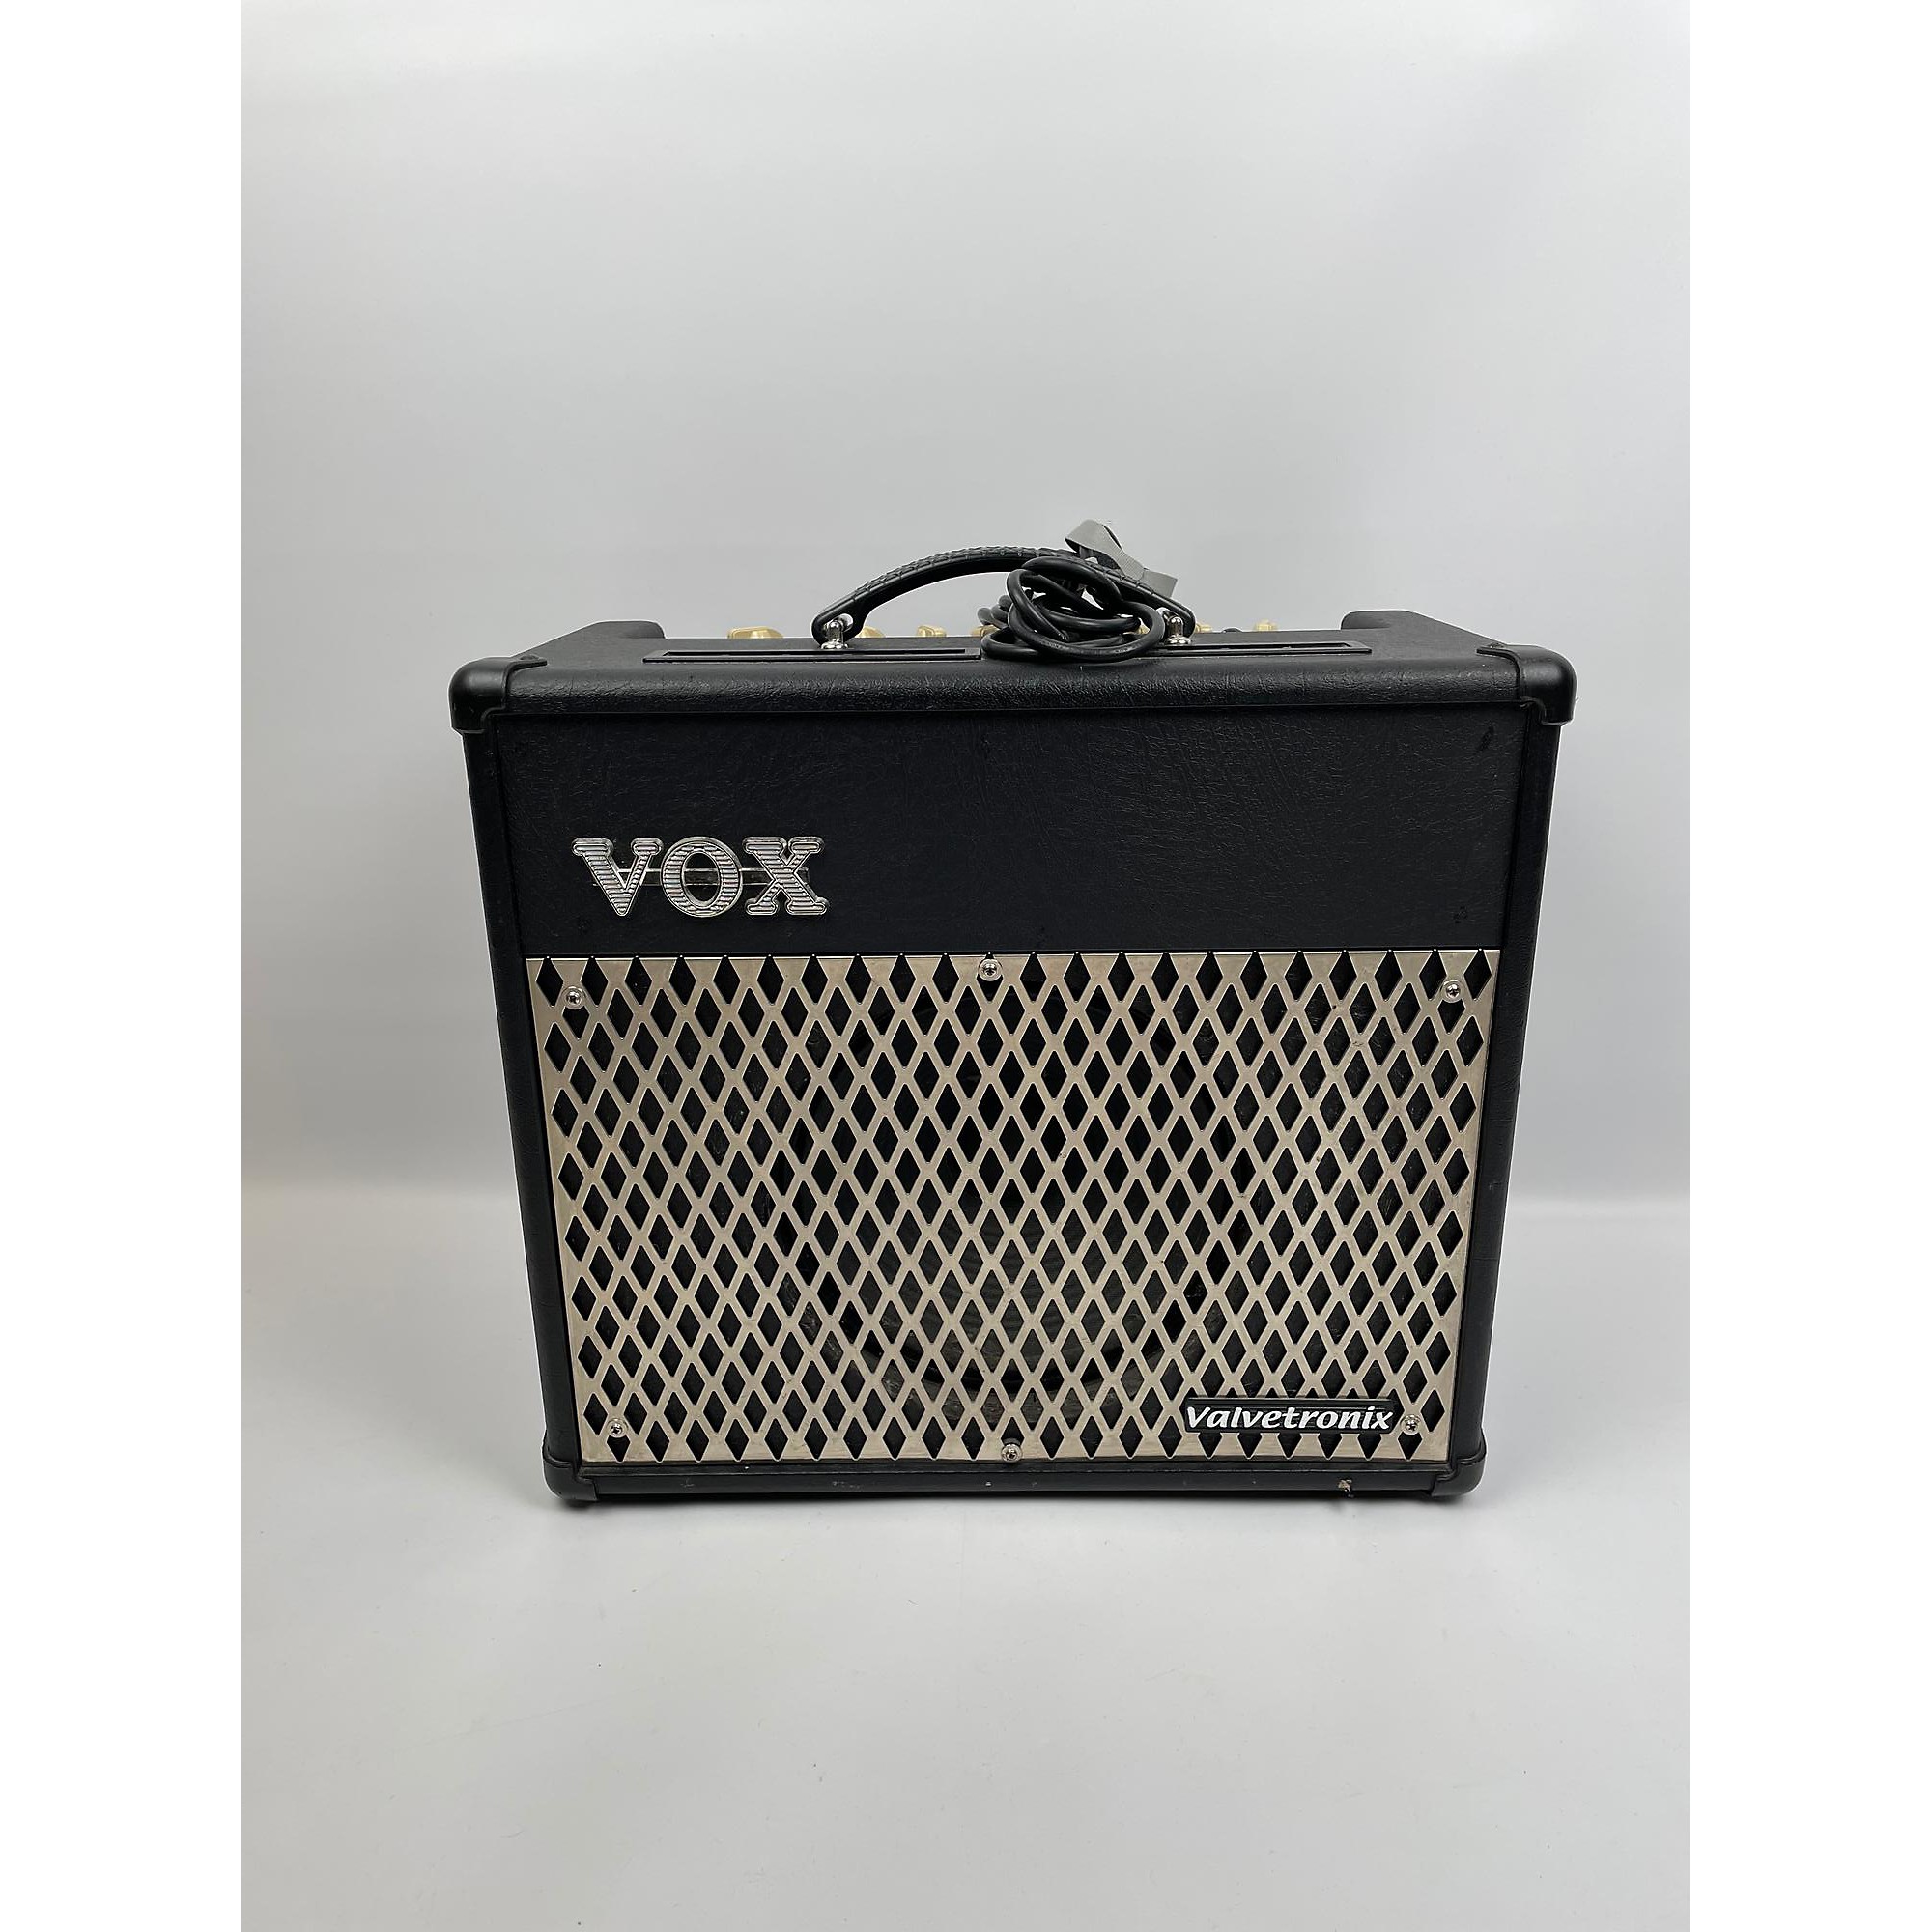 VOX ValvetronixVT30 30W Guitar Combo Amp-hybridautomotive.com